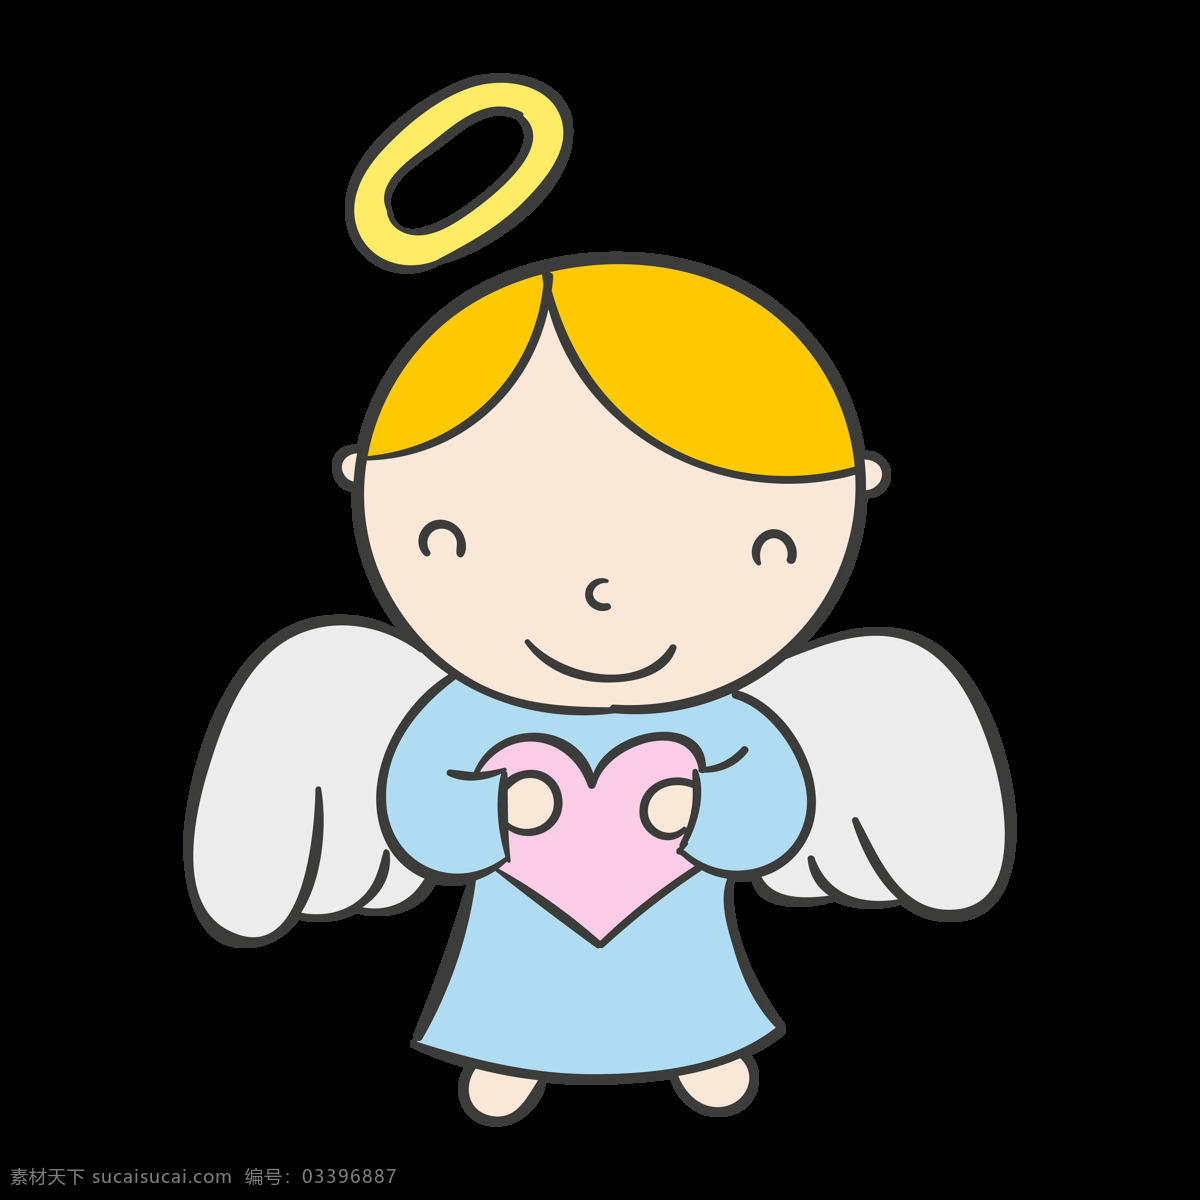 卡通小天使 天使图片 可爱天使 天使免扣图 png图片